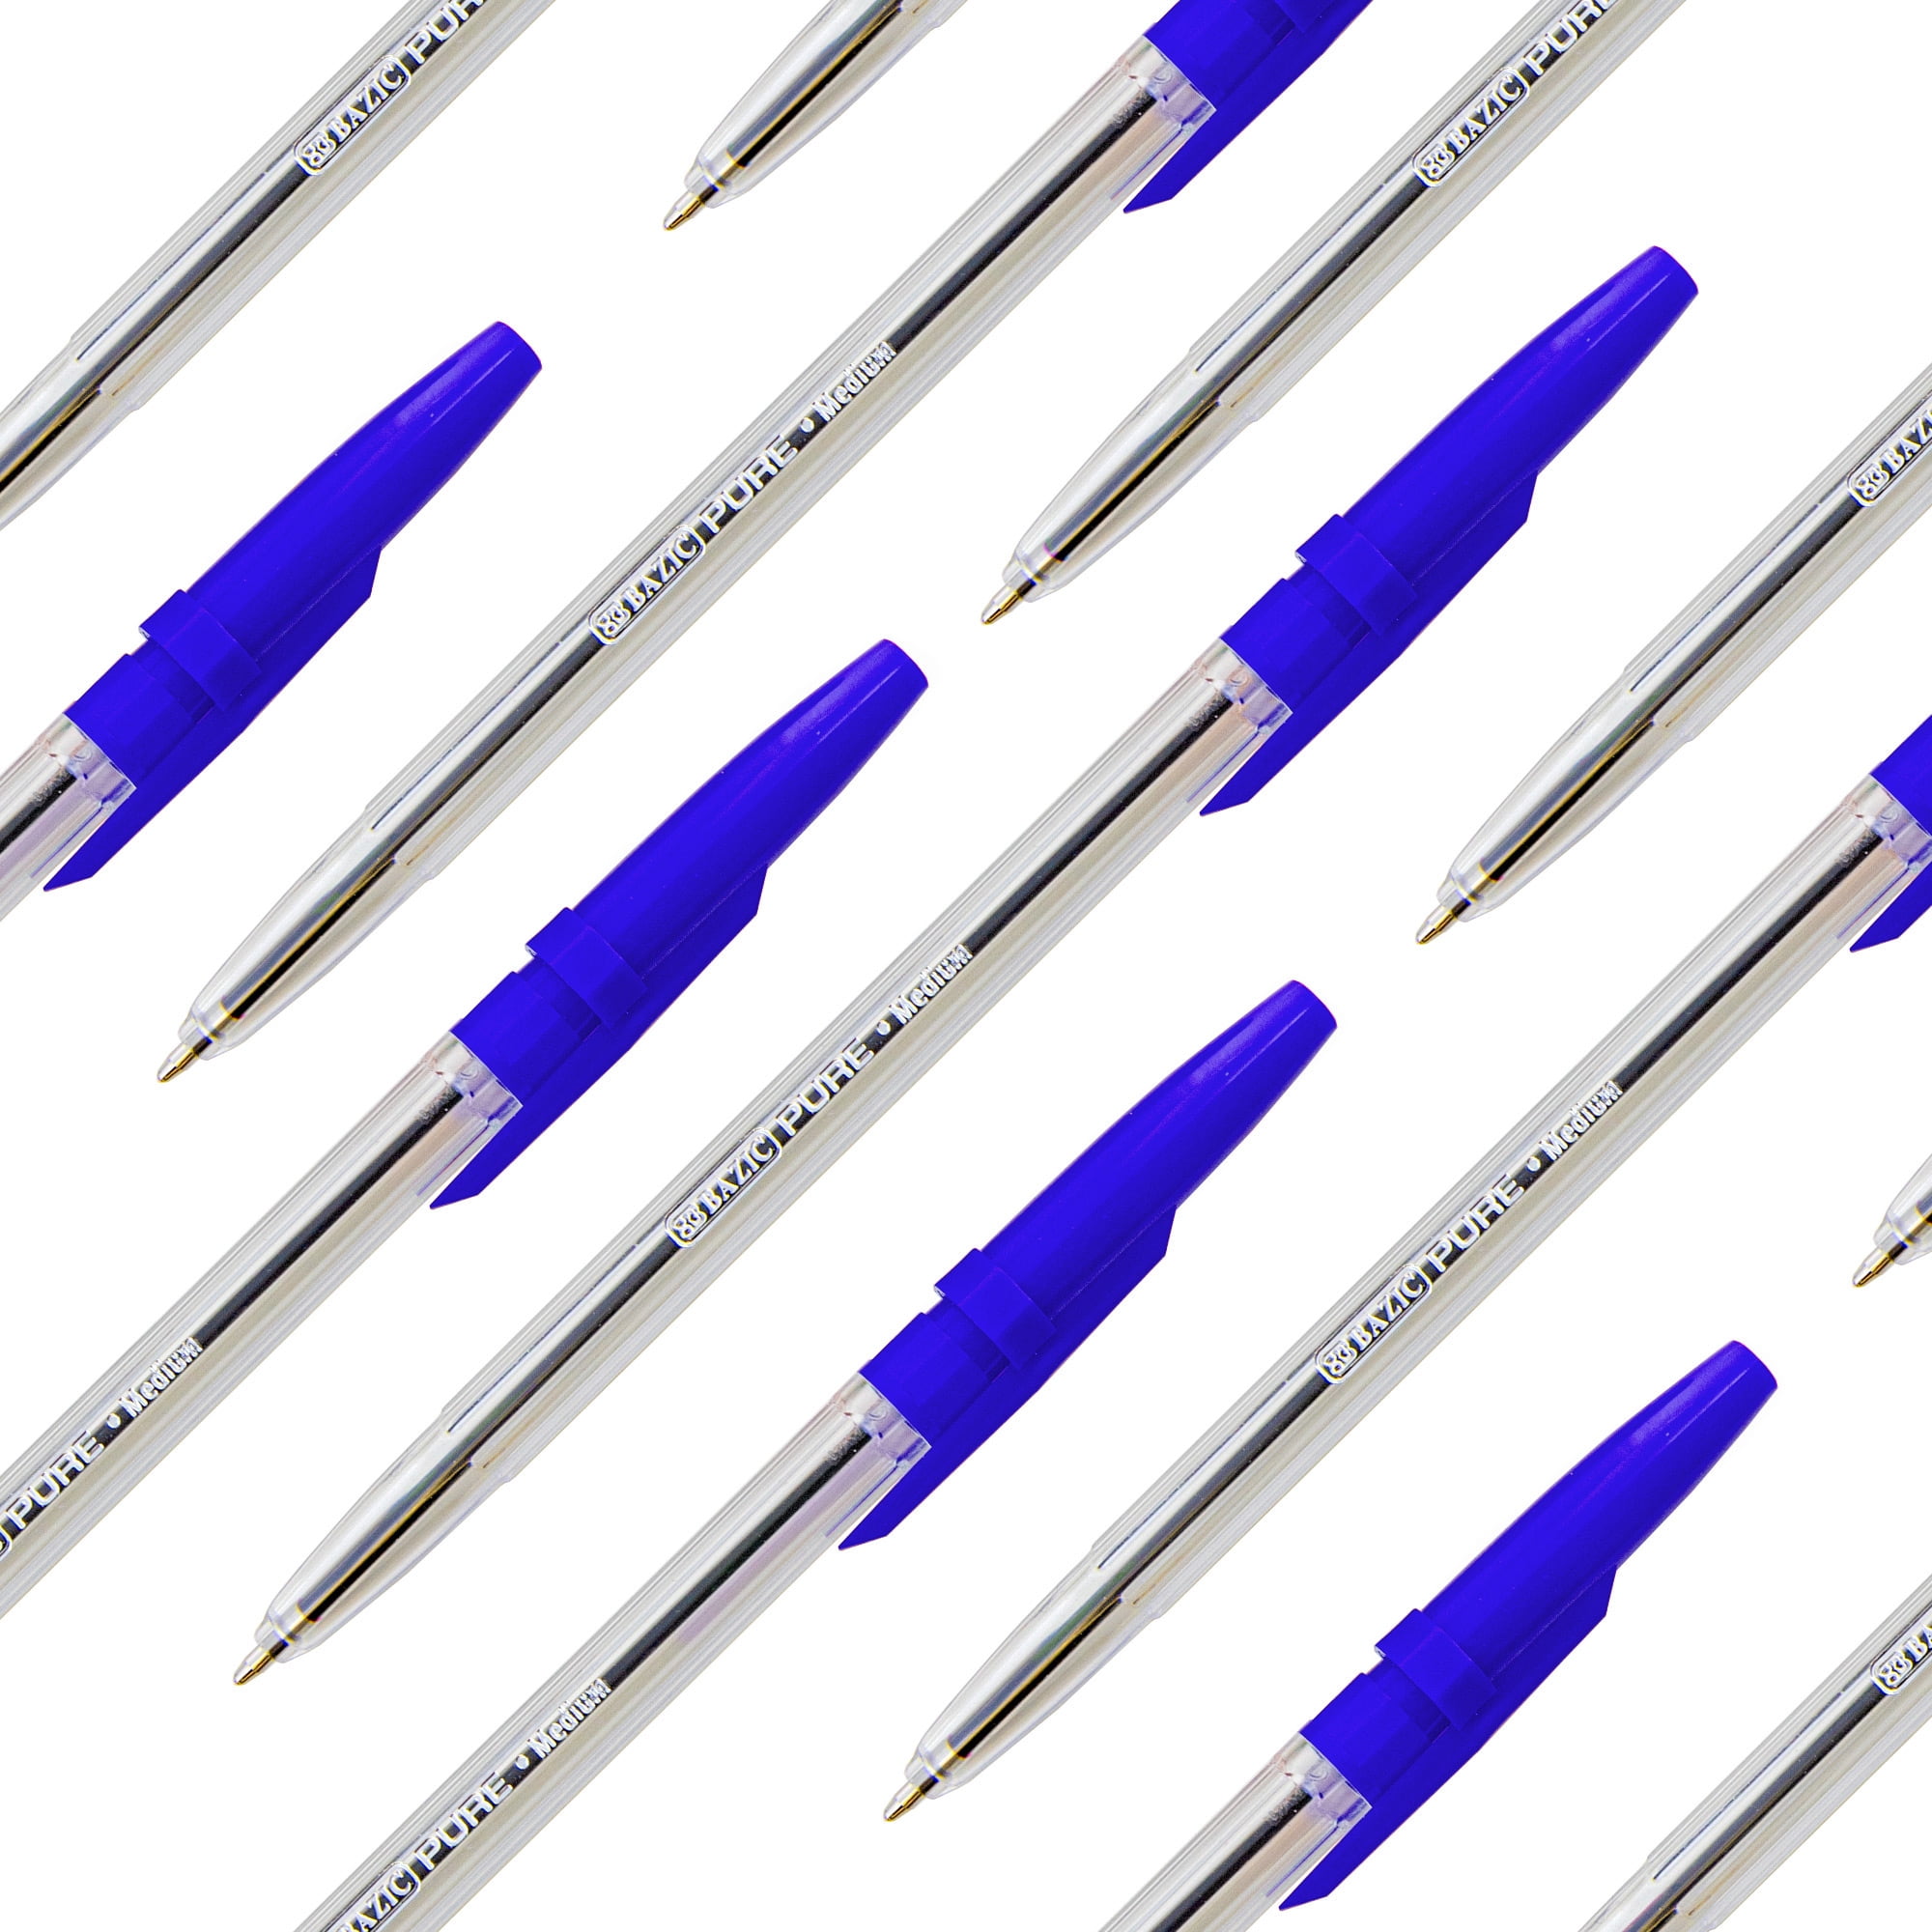 10 Pure Neon Color Stick Pen - The CEO Creative